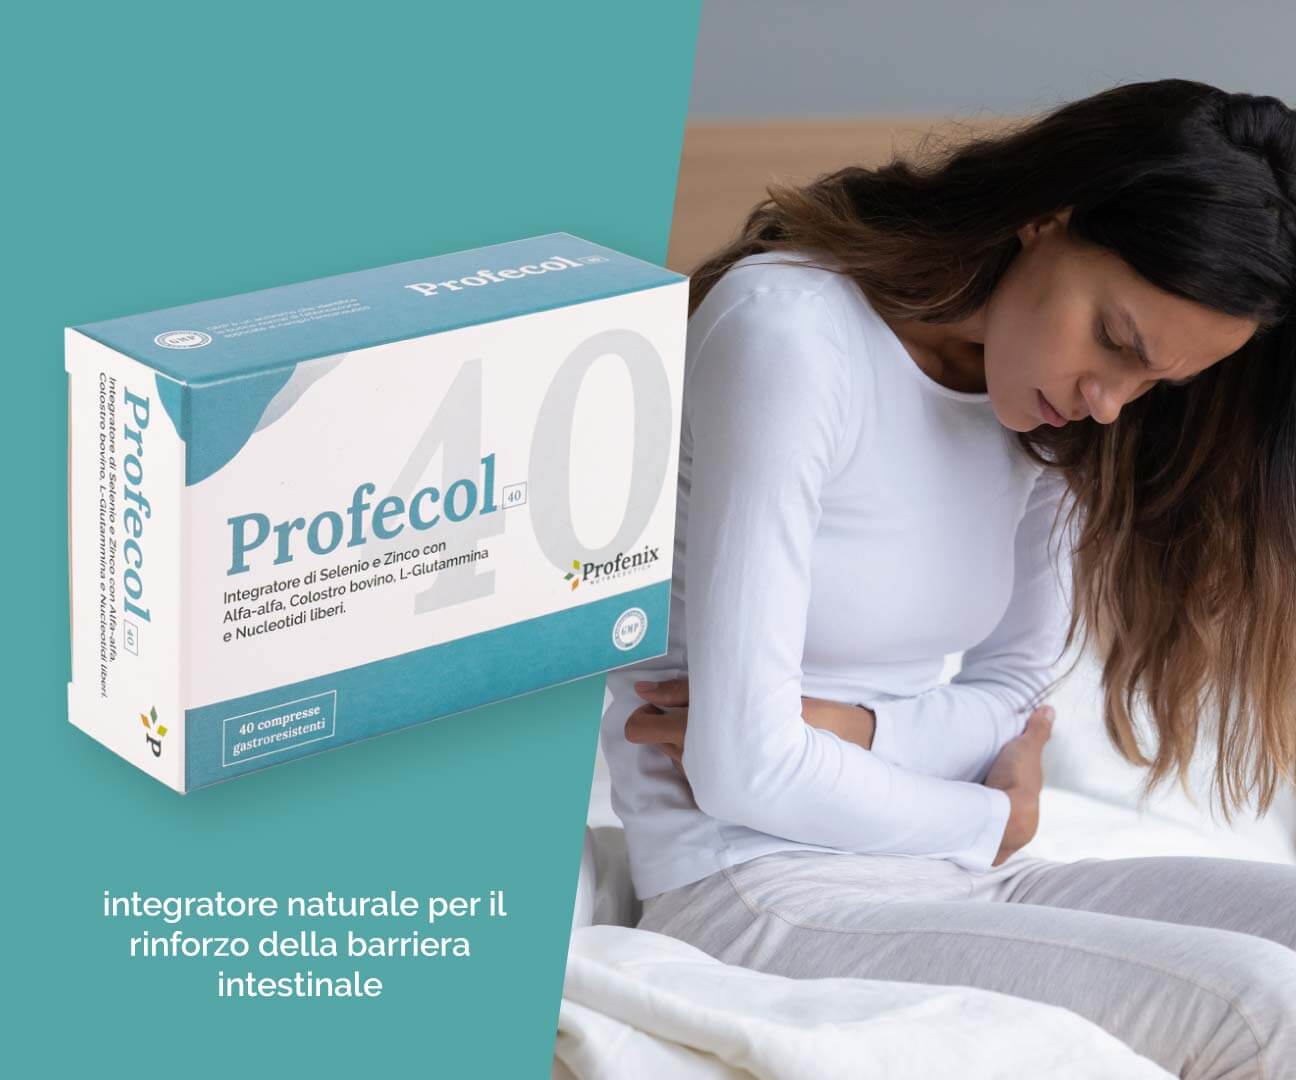 PROFECOL 40 integratore naturale per il rinforzo della barriera intestinale